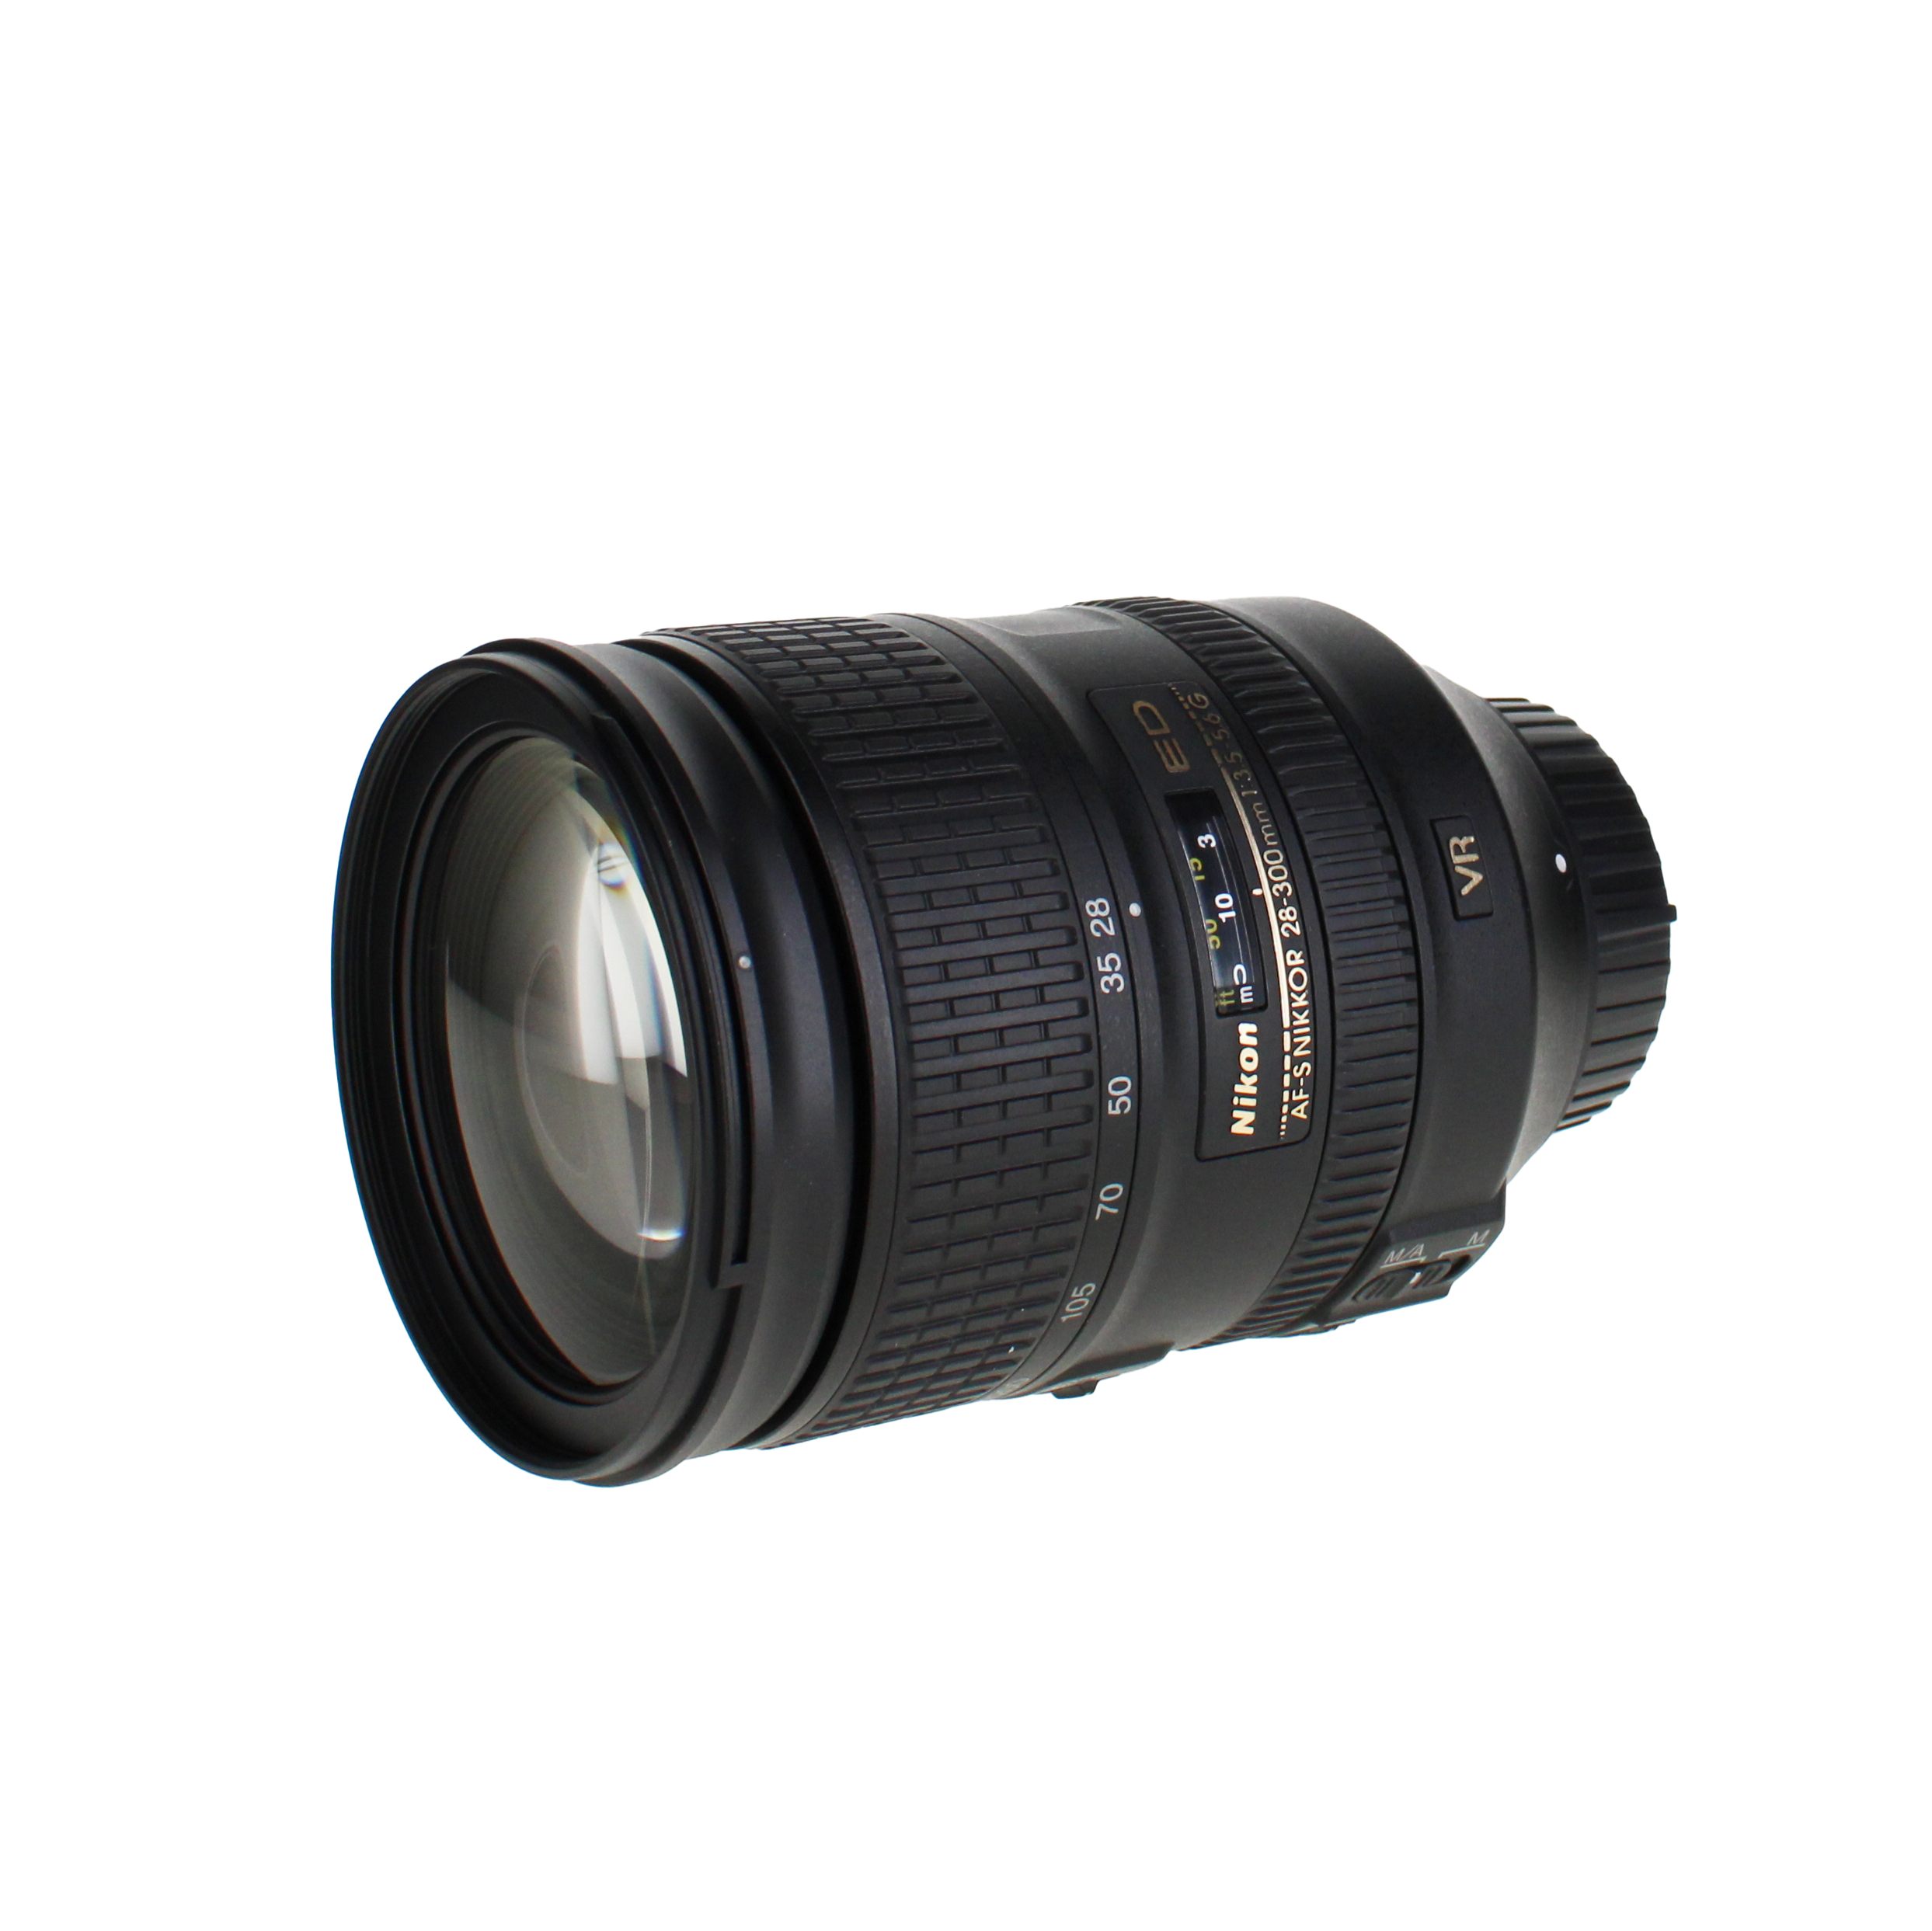 Nikon 28-300mm f/3.5-5.6G ED-IF AF-S VR II (Vibration Reduction) Wide Angle Telephoto Zoom Nikkor Lens - International Version (No Warranty)